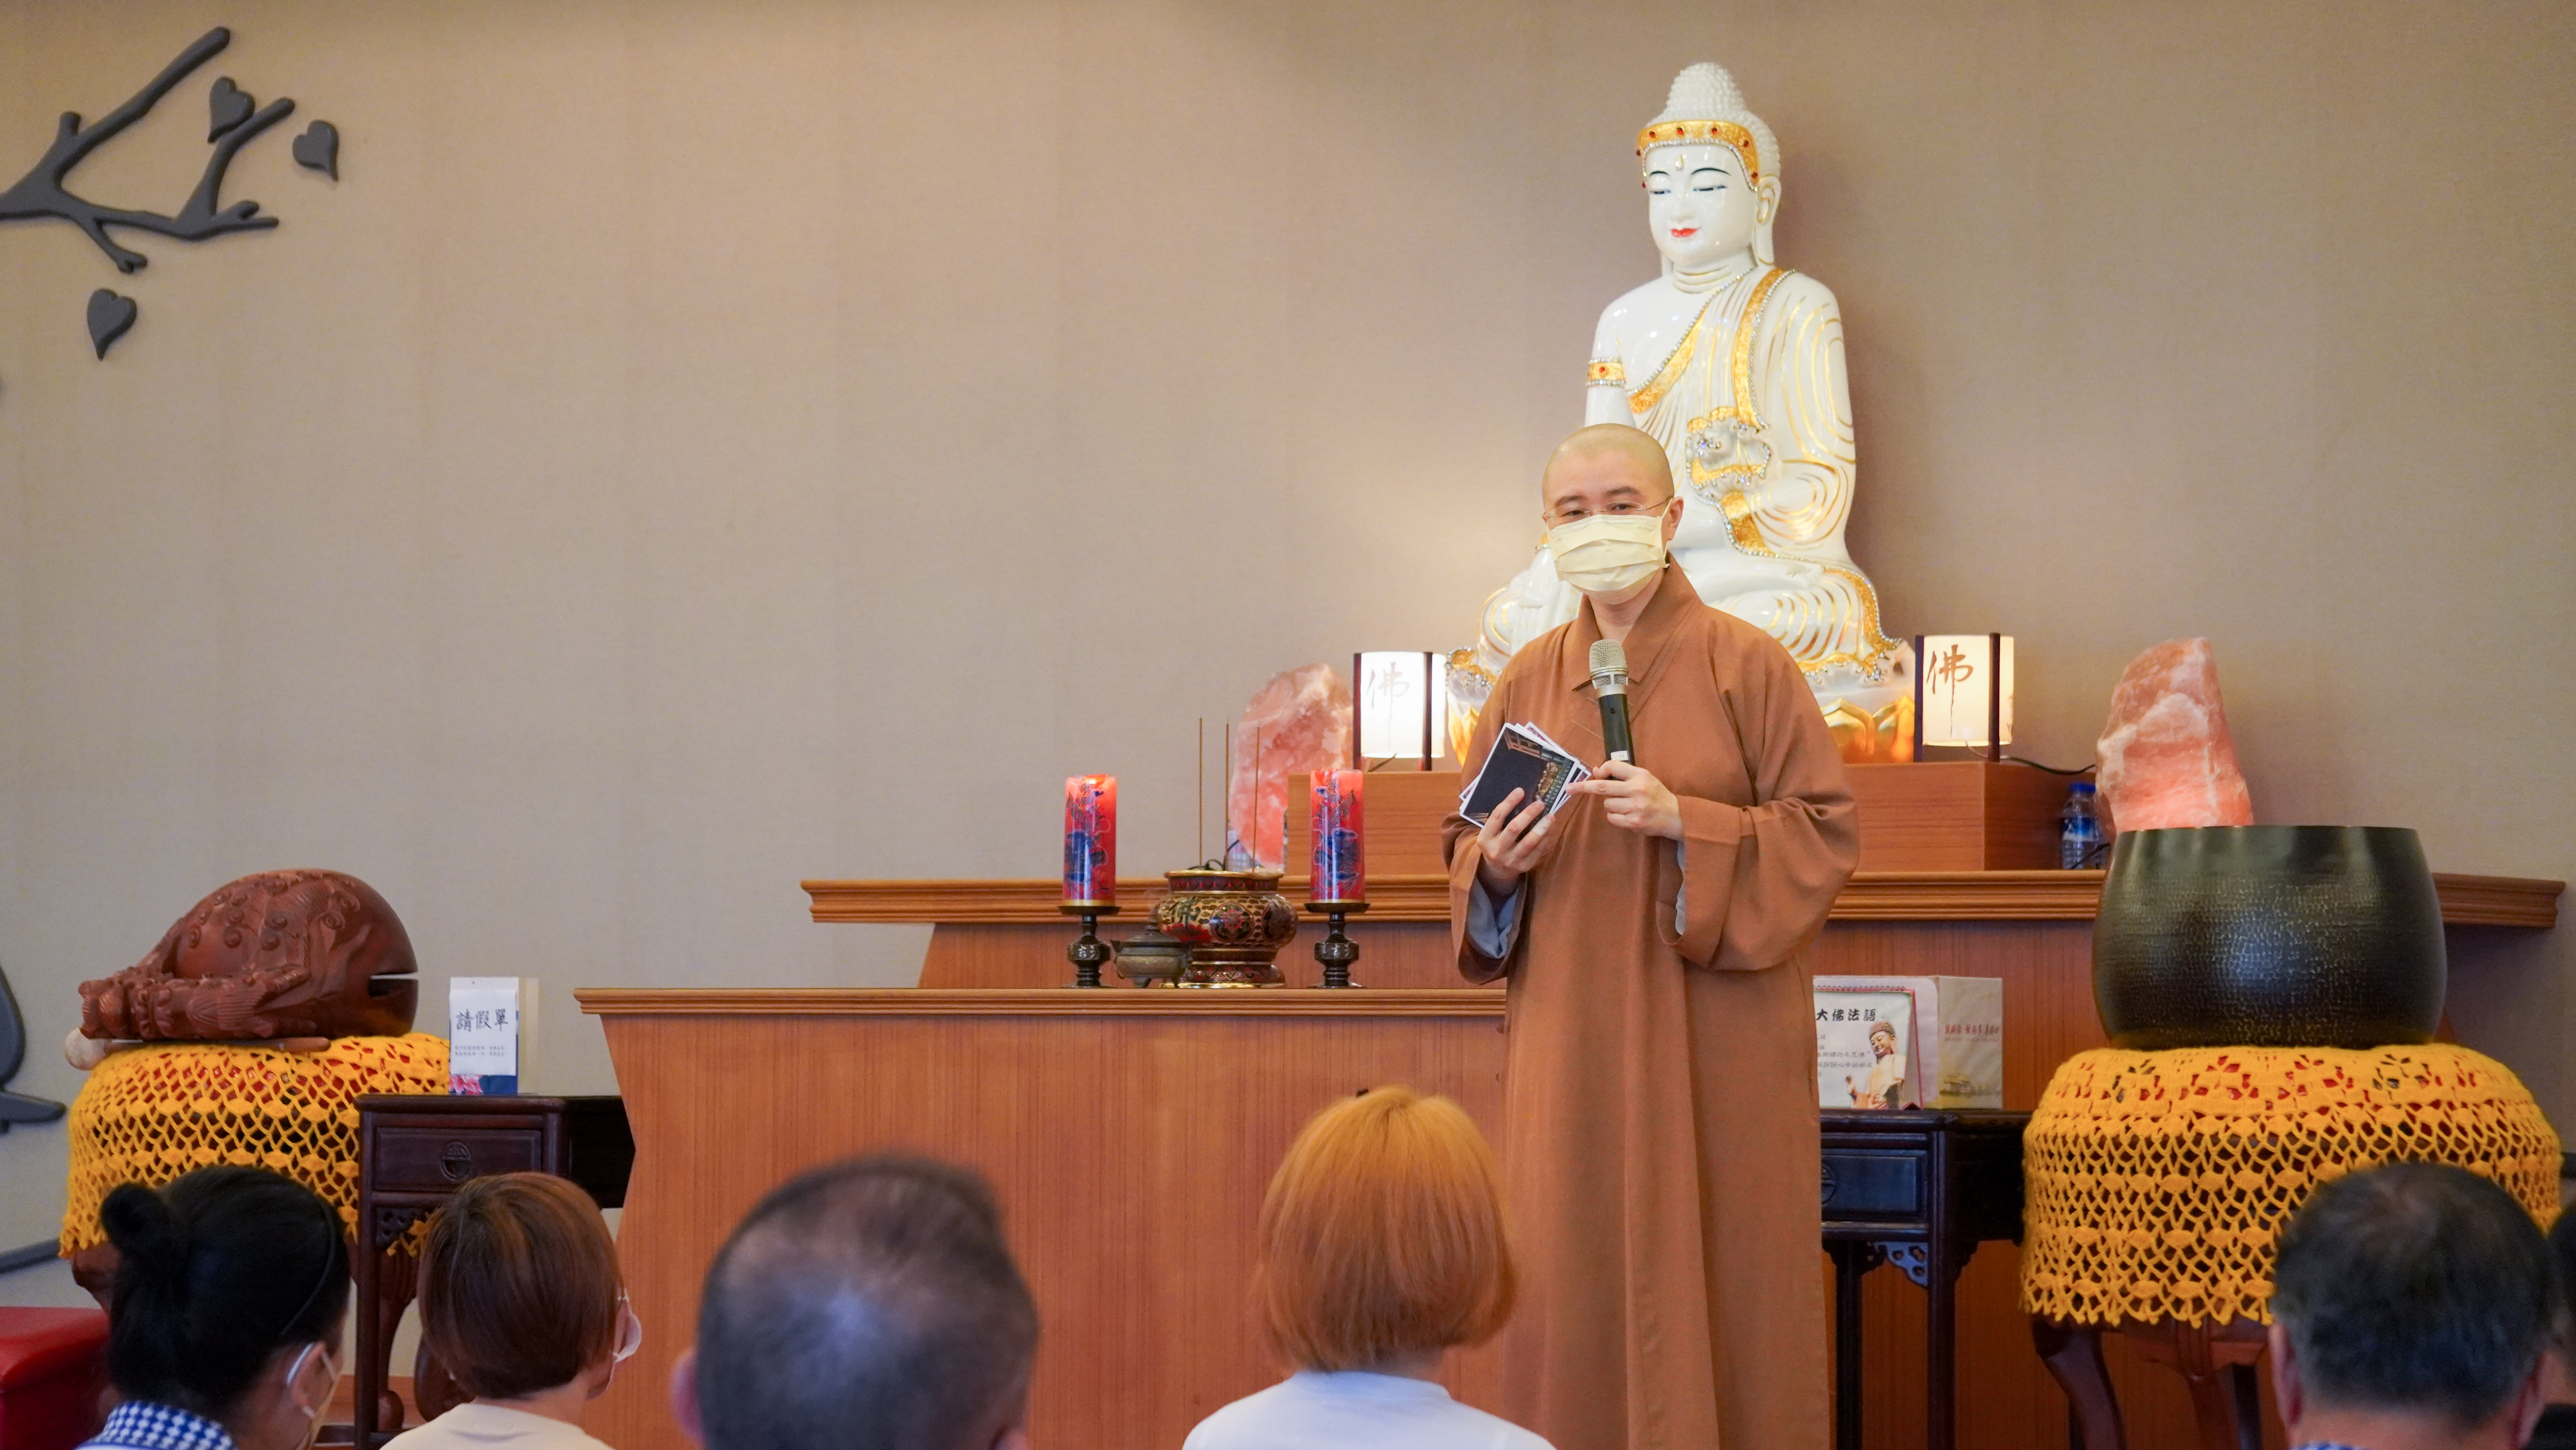 2佛教学系生活老师妙迦法师为义工开示。